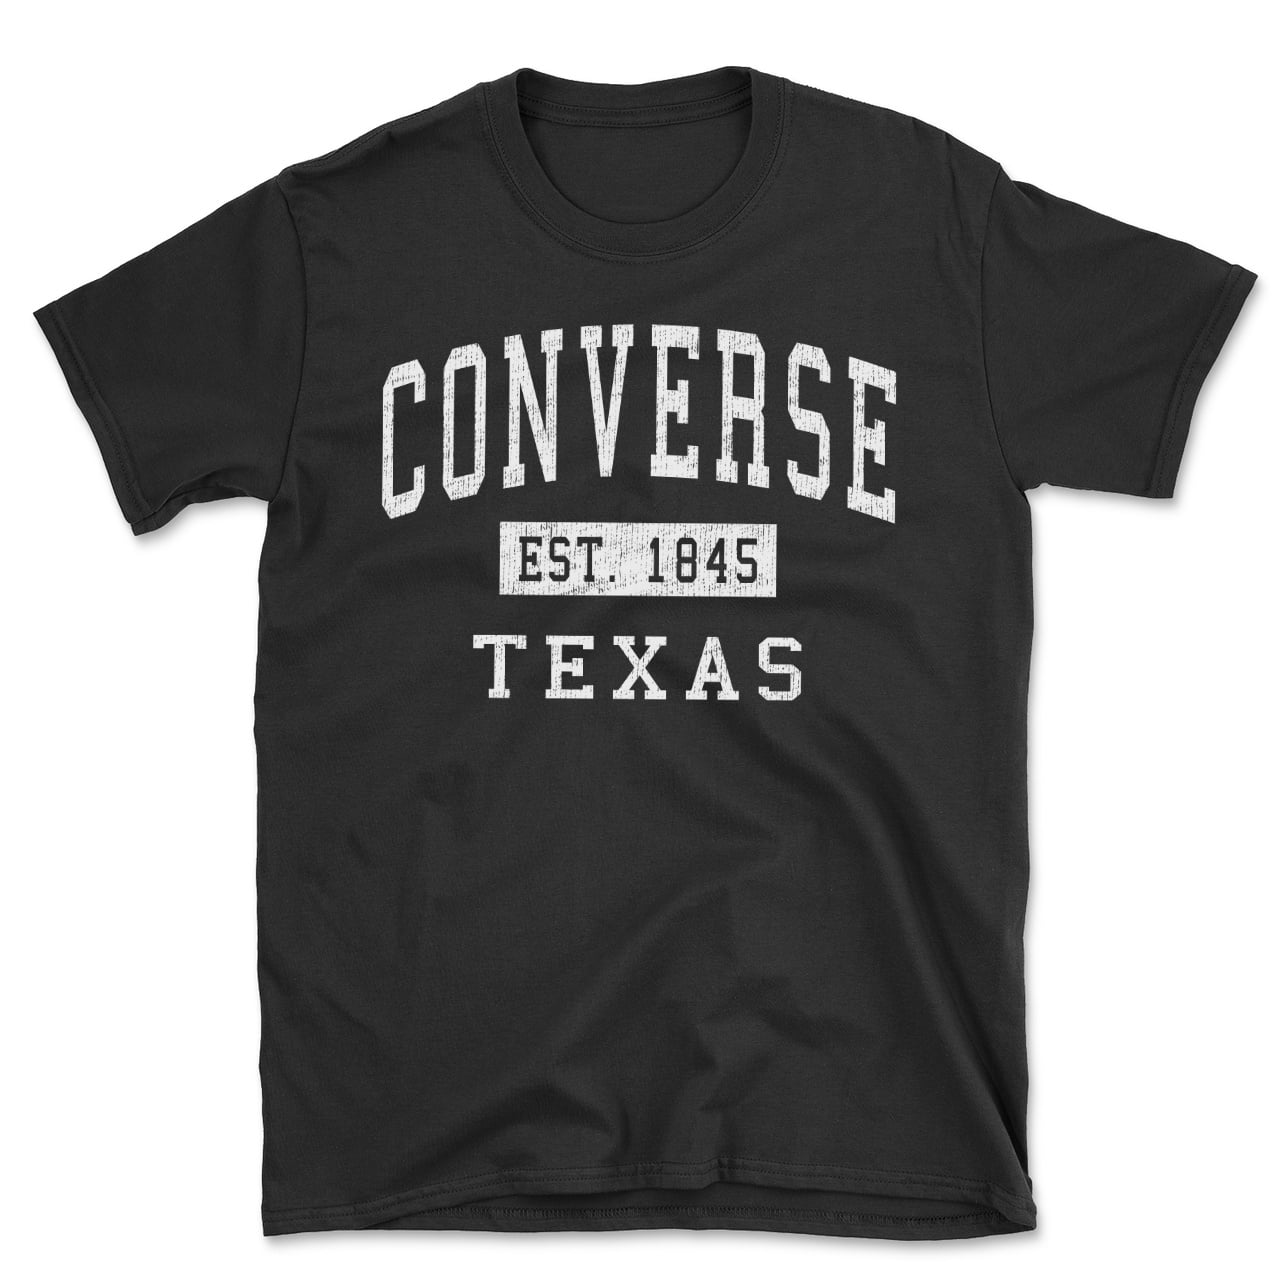 Converse Texas Classic Established Men's Cotton T-Shirt 